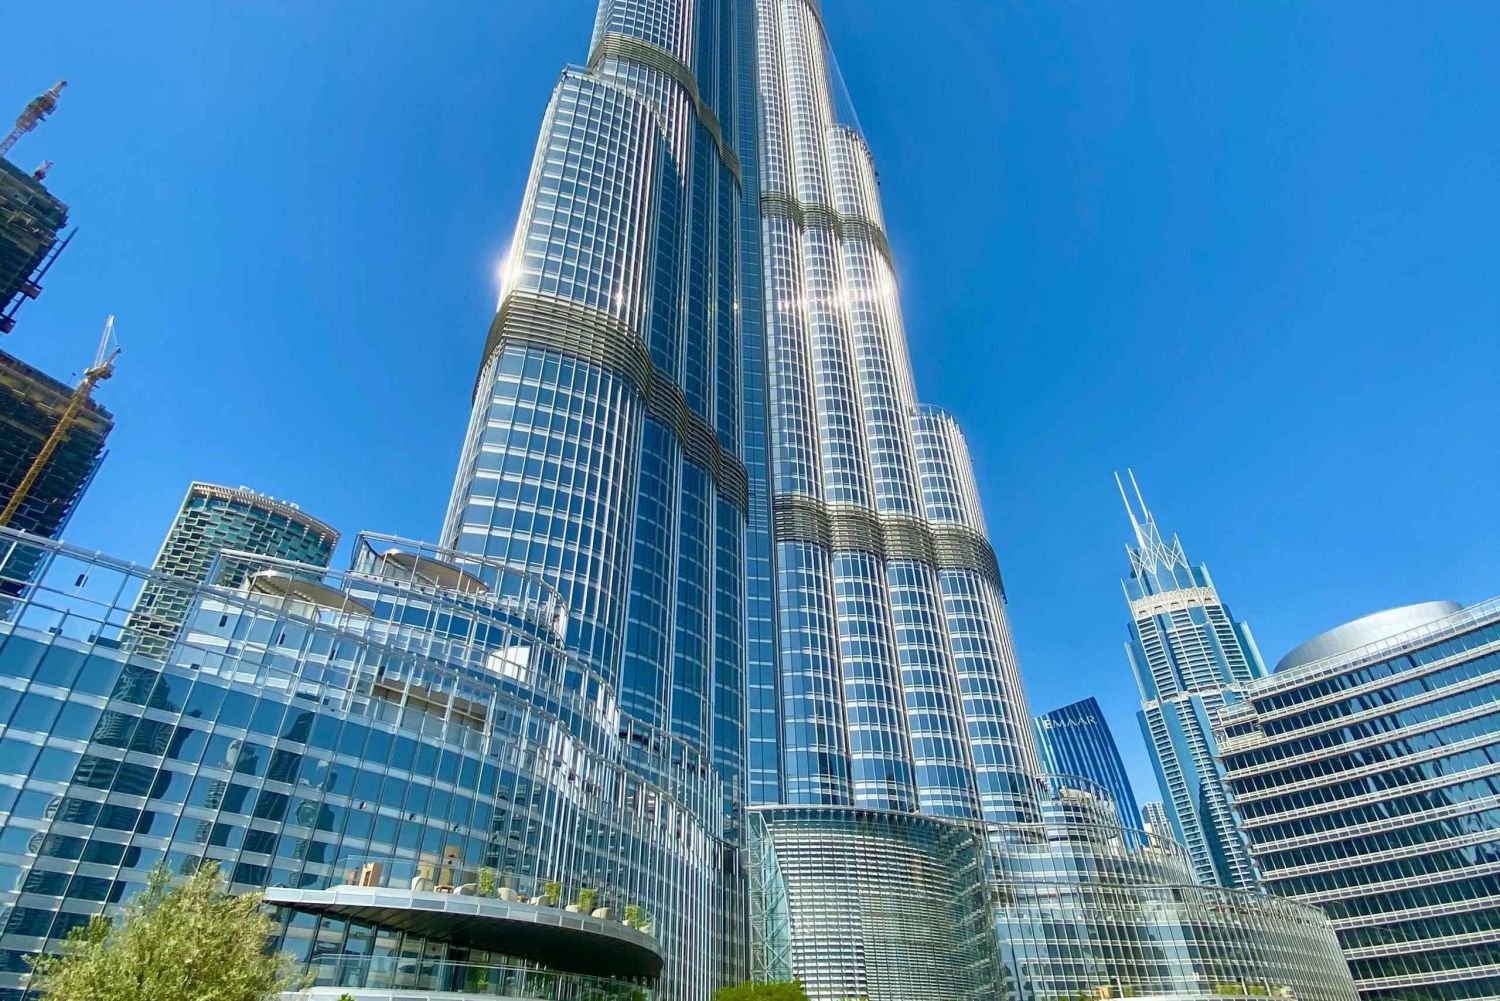 Dubai Top Landmarks City Tour With Burj Khalifa Entry